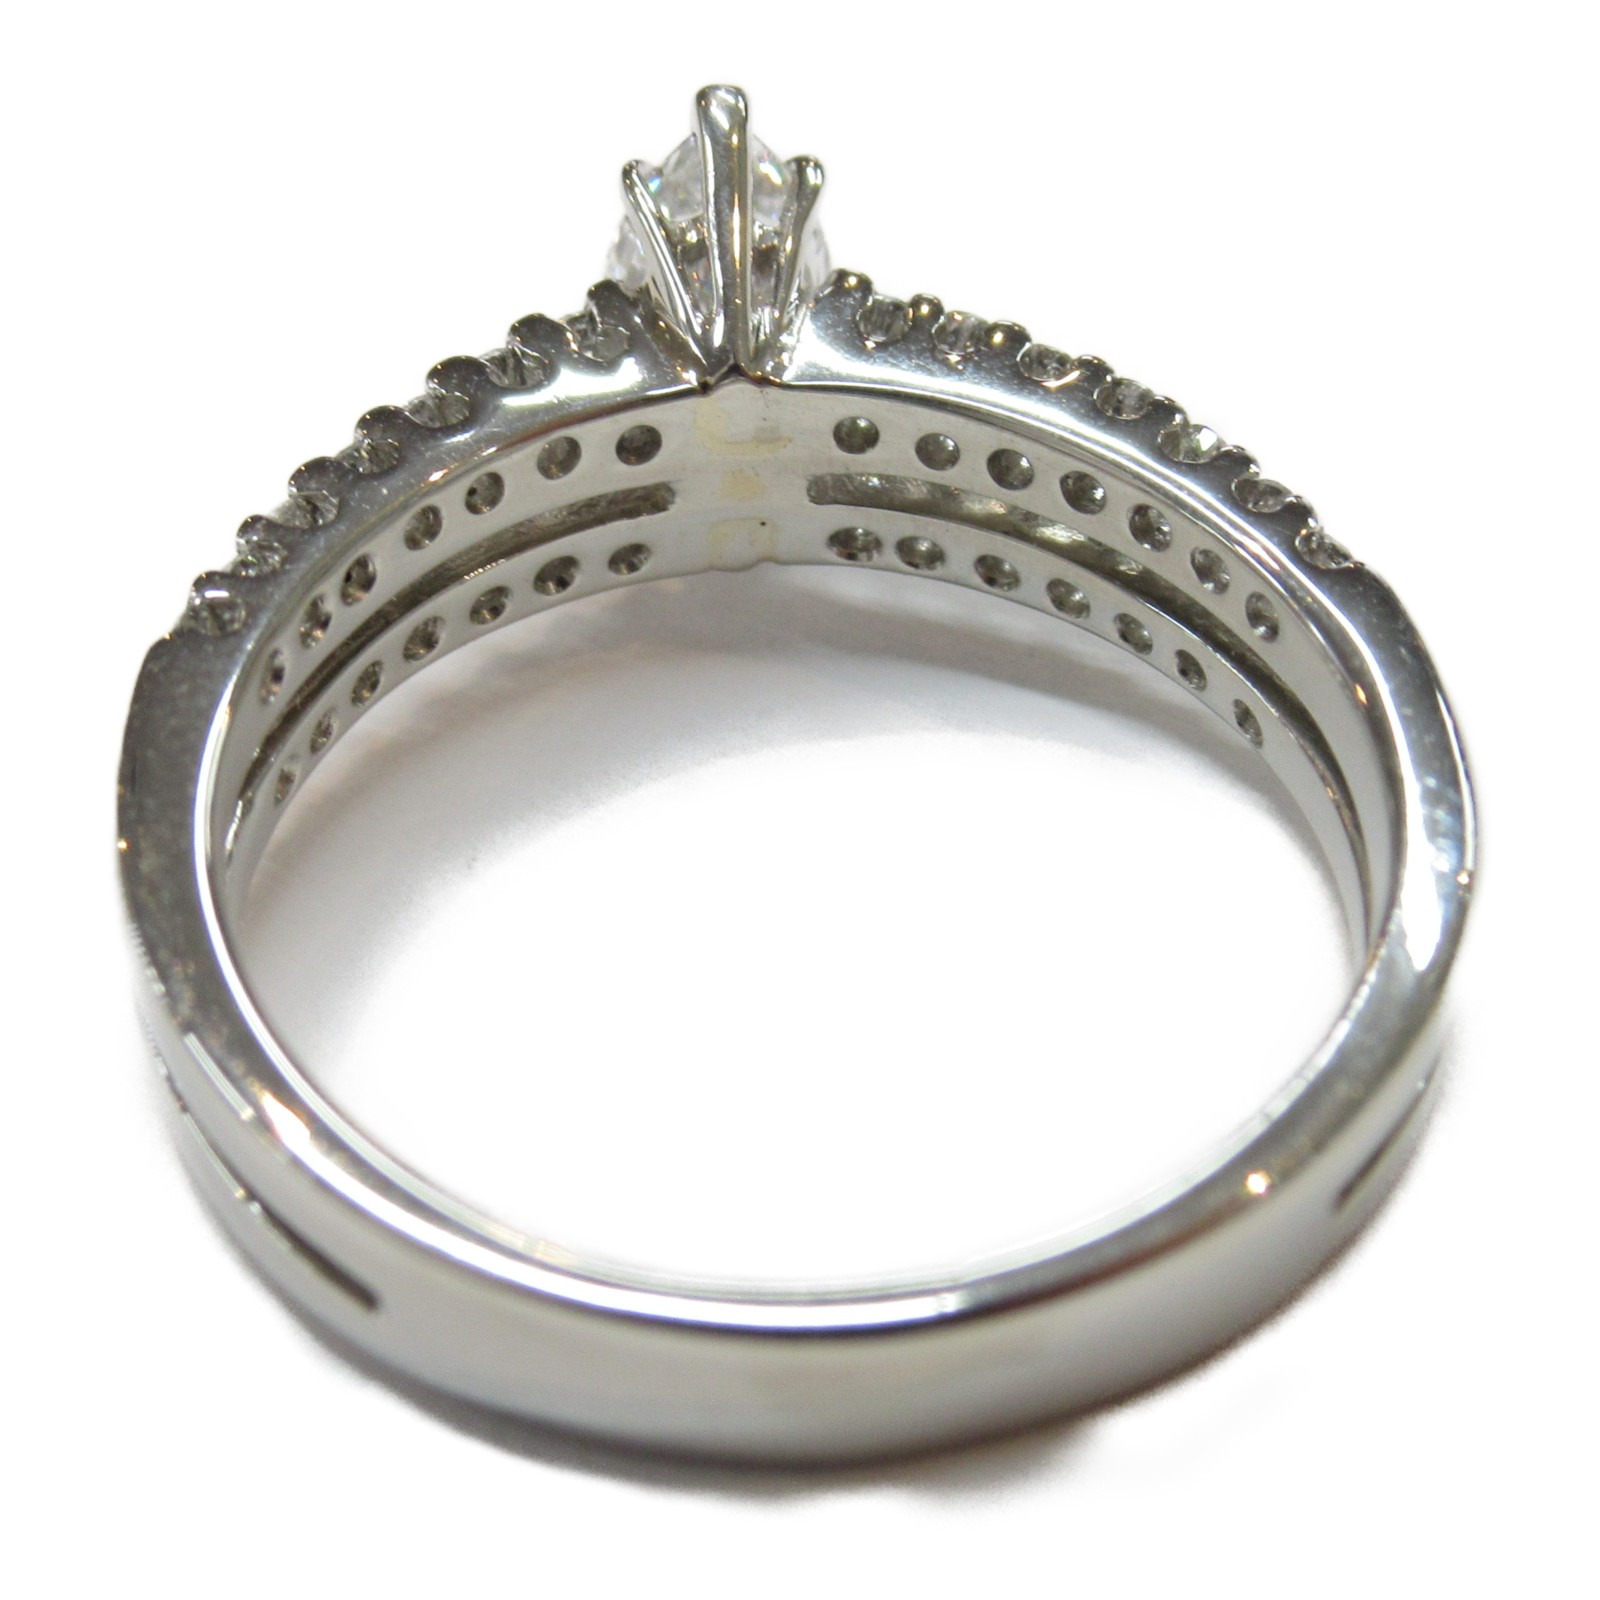 人気商品の JEWELRY ジュエリー リング 指輪 ダイヤモンド クリア系 Pt900プラチナ 中古 レディース